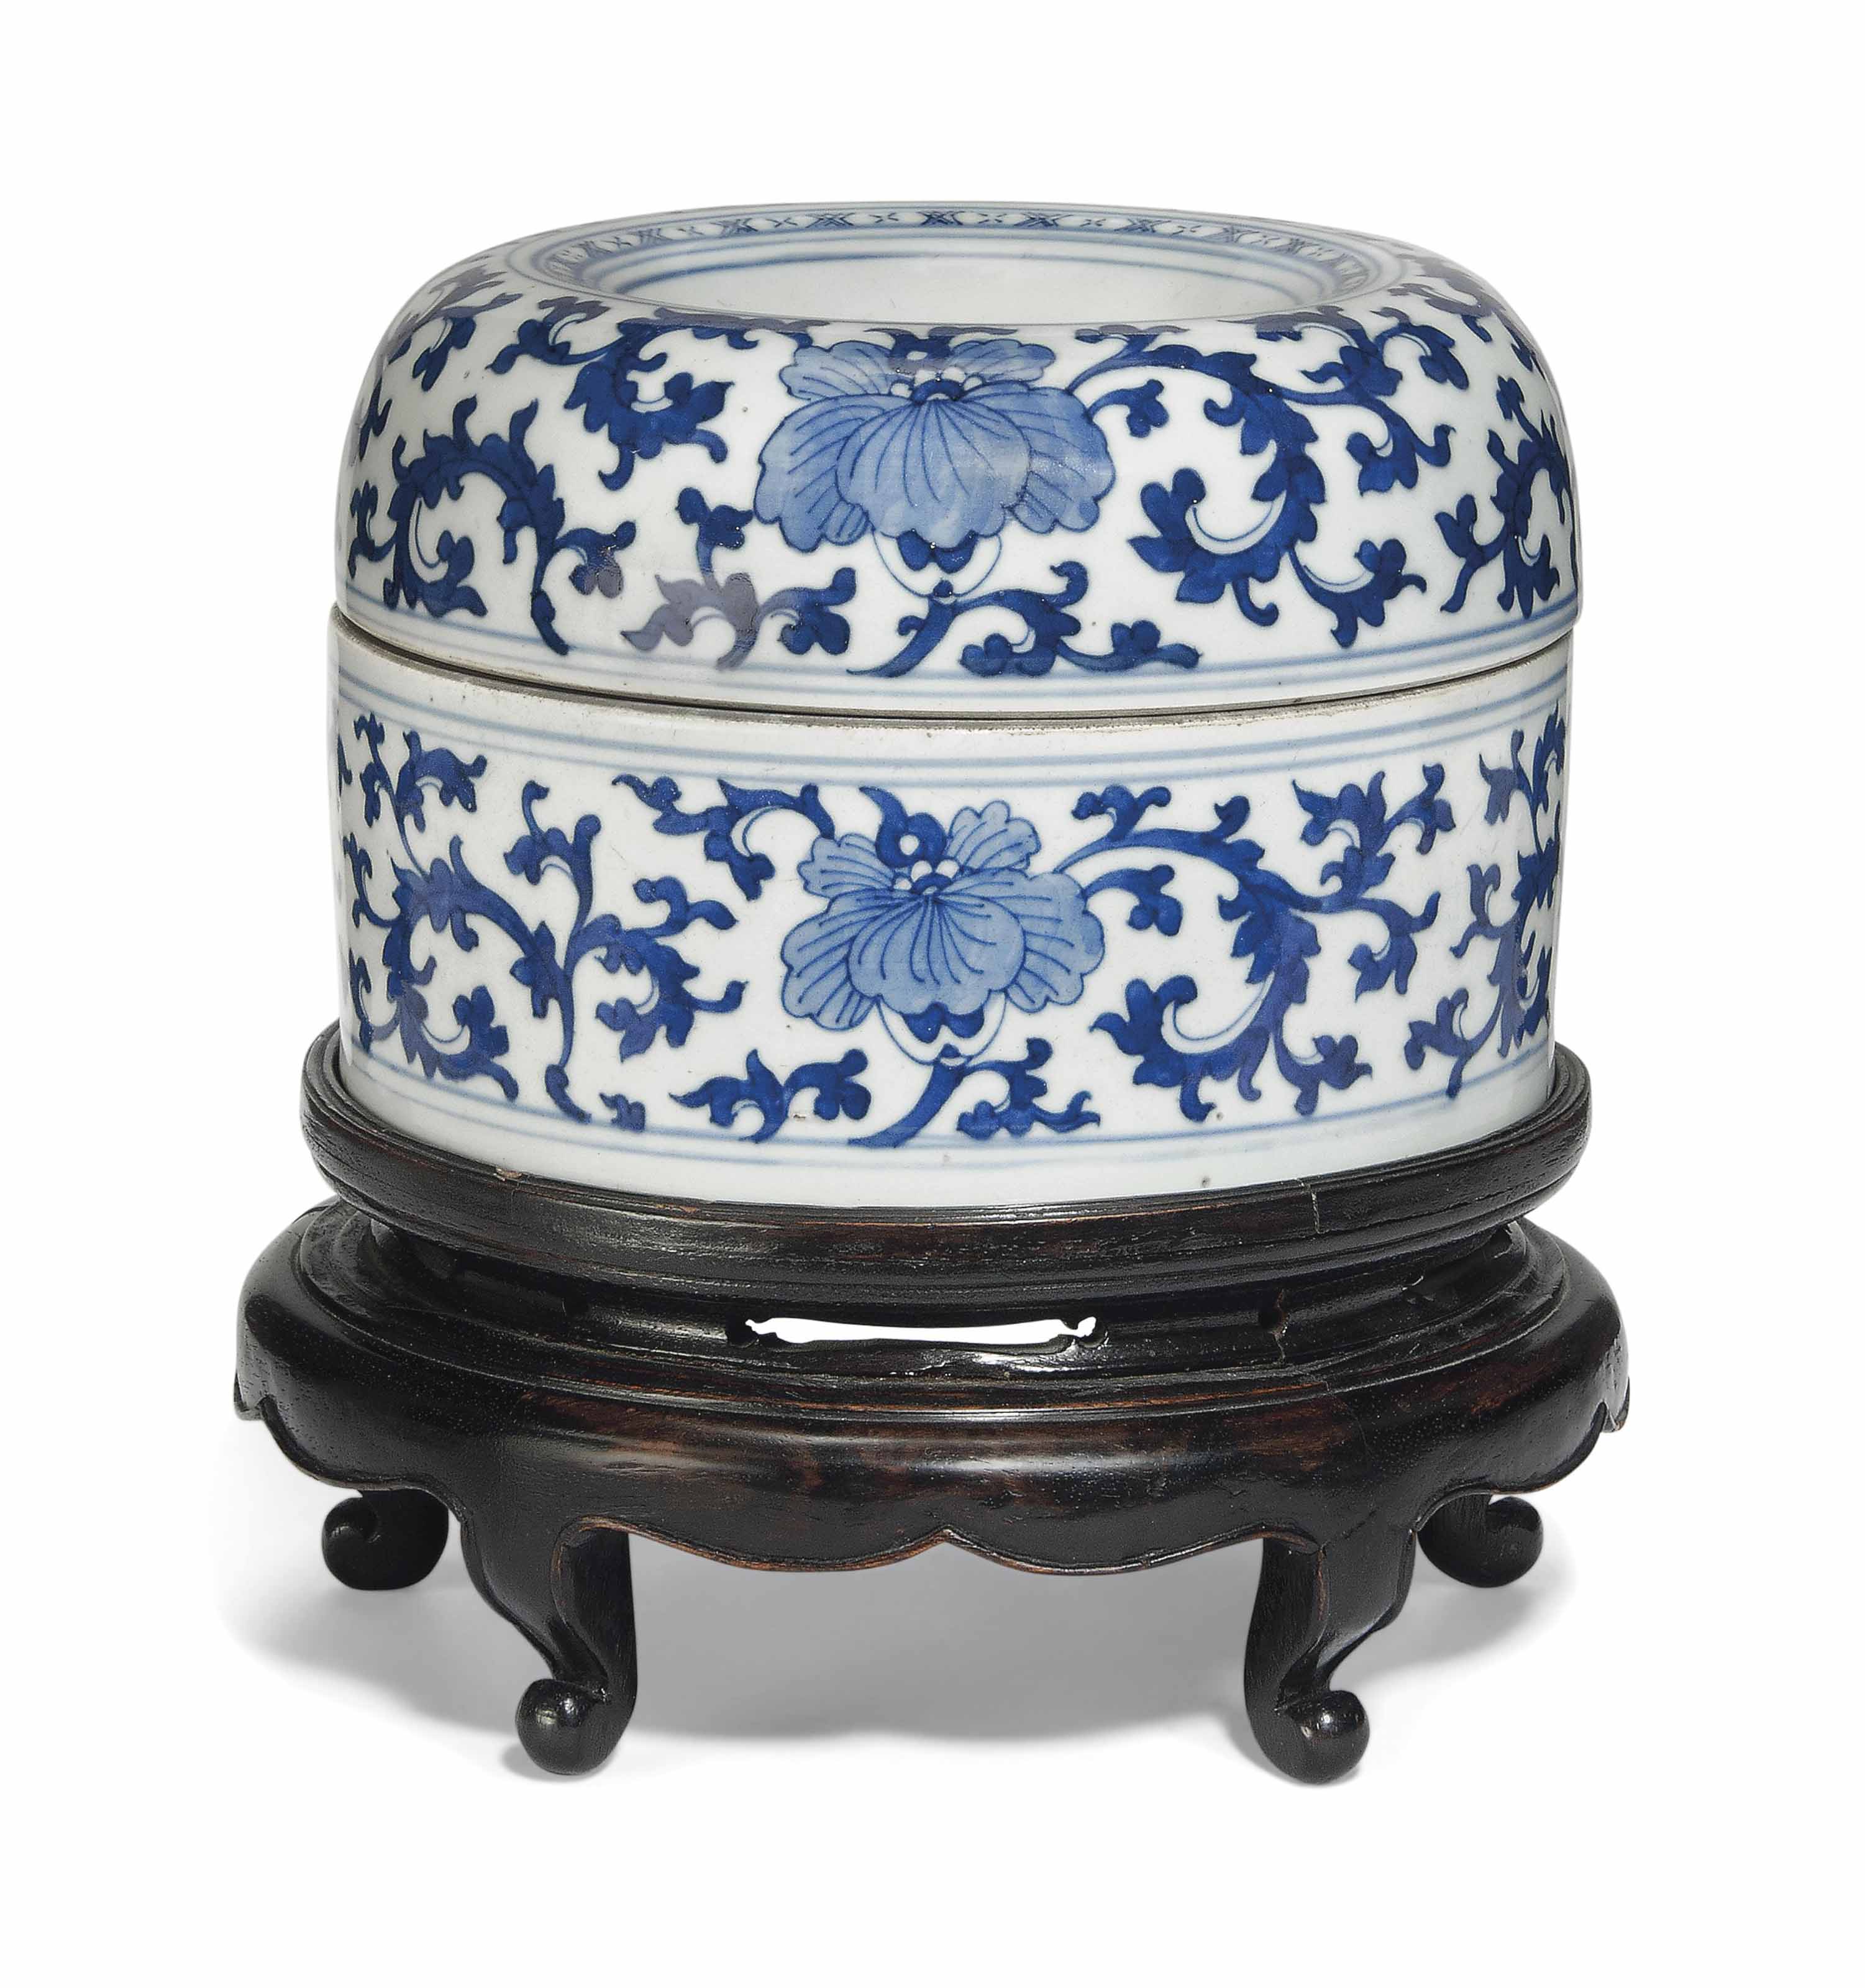 佳士得拍卖 10416 中国陶瓷、工艺精品与纺织品 伦敦南肯辛顿|2015年5月12日 拍品403 清 康熙 青花莲花纹圆盒 A BLUE AND WHITE CIRCULAR 'LOTUS' VESSEL AND COVER KANGXI PERIOD (1662-1722)